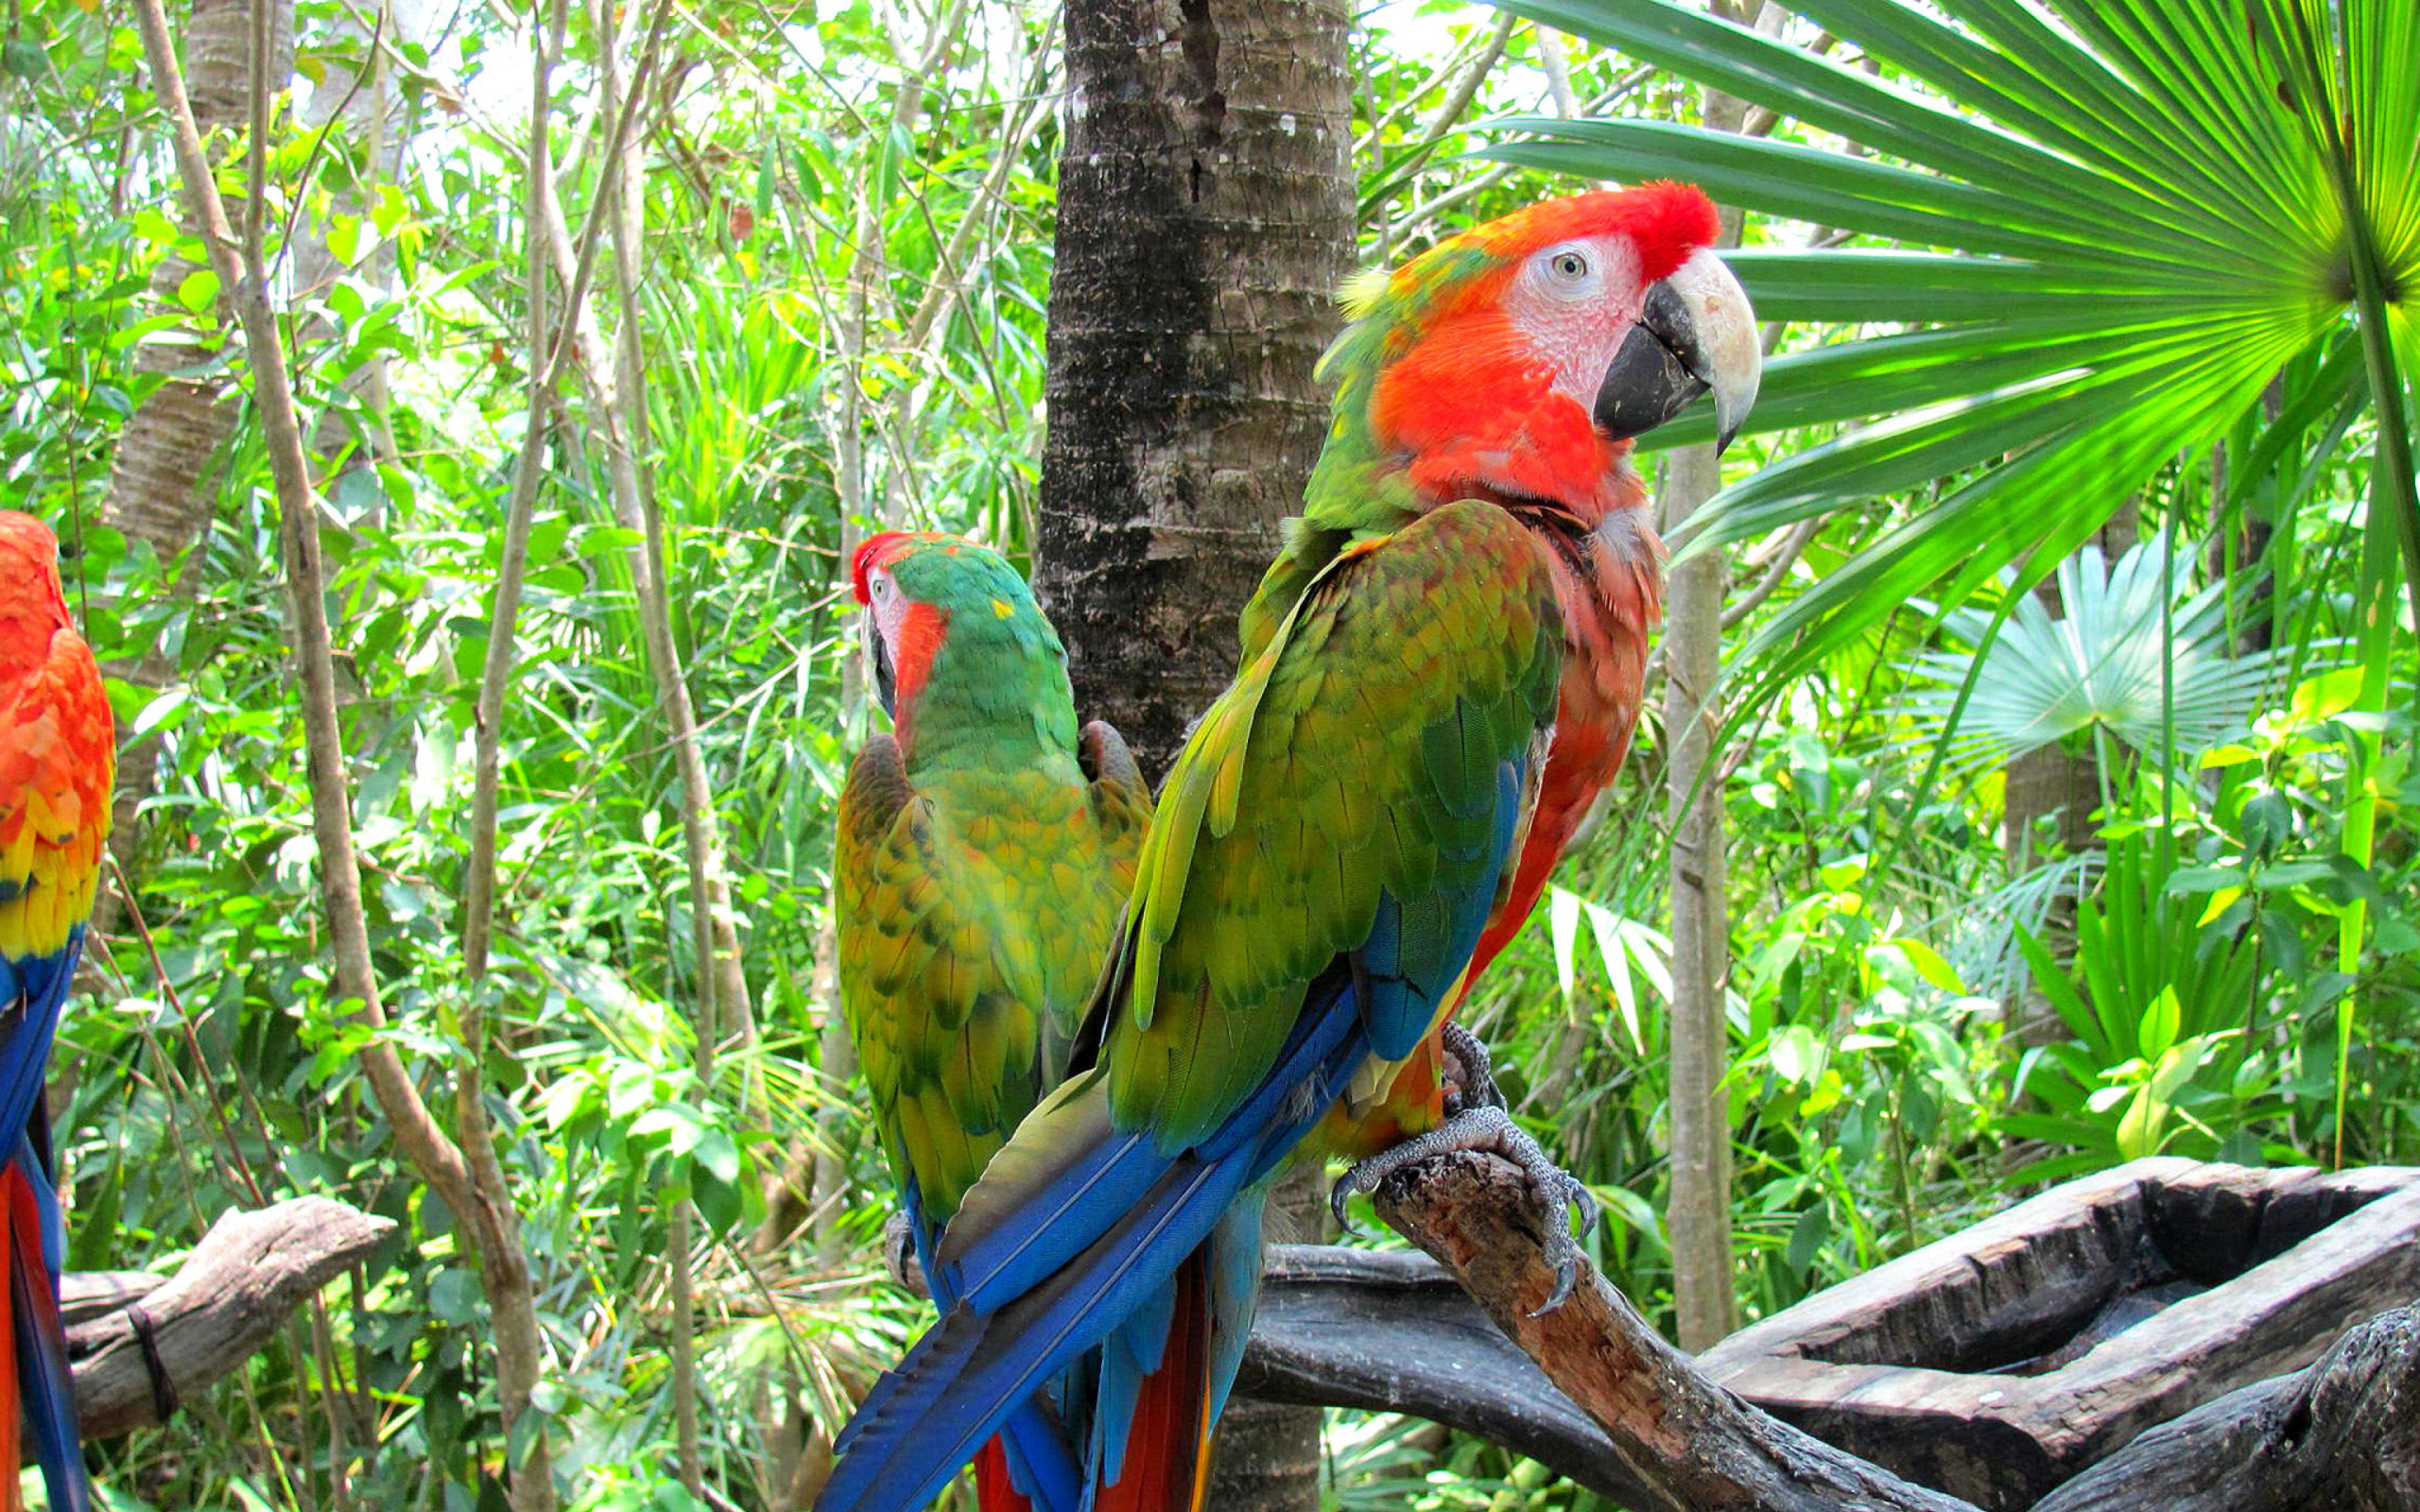 Sfondi Macaw parrot Amazon forest 2560x1600